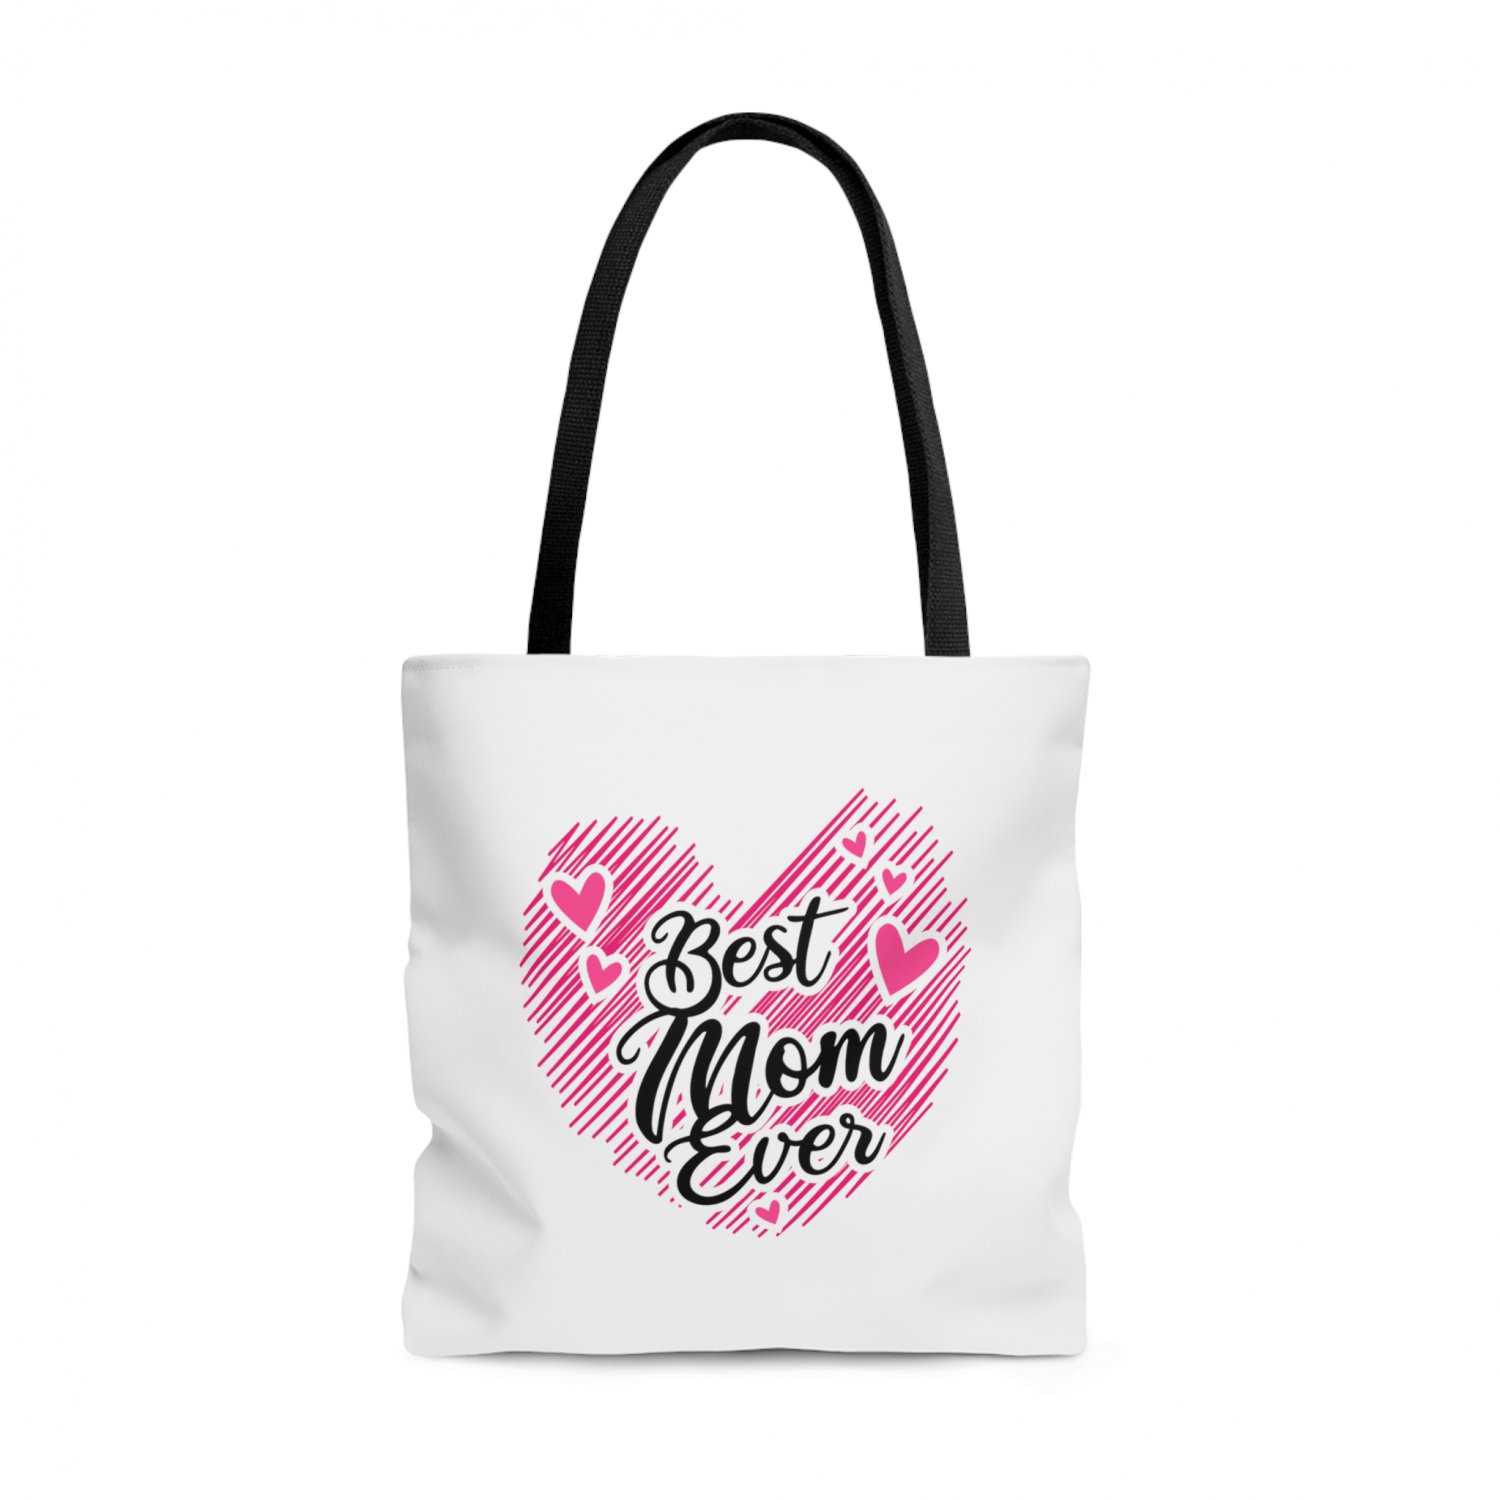 Best Mom Ever Tote Bag Medium